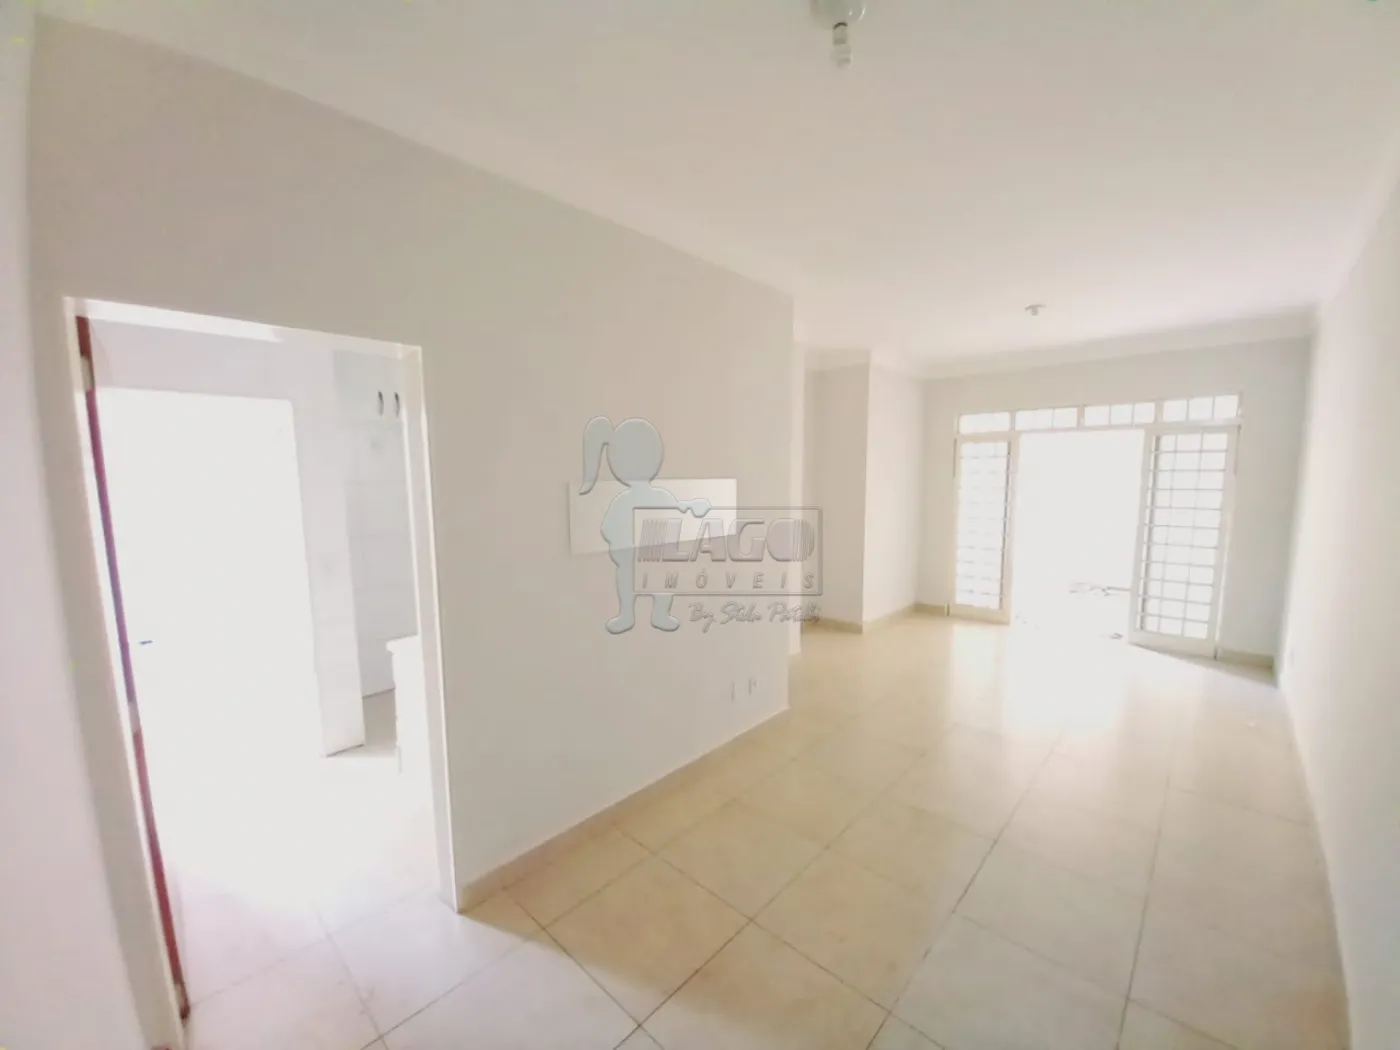 Alugar Apartamentos / Padrão em Ribeirão Preto R$ 1.900,00 - Foto 1